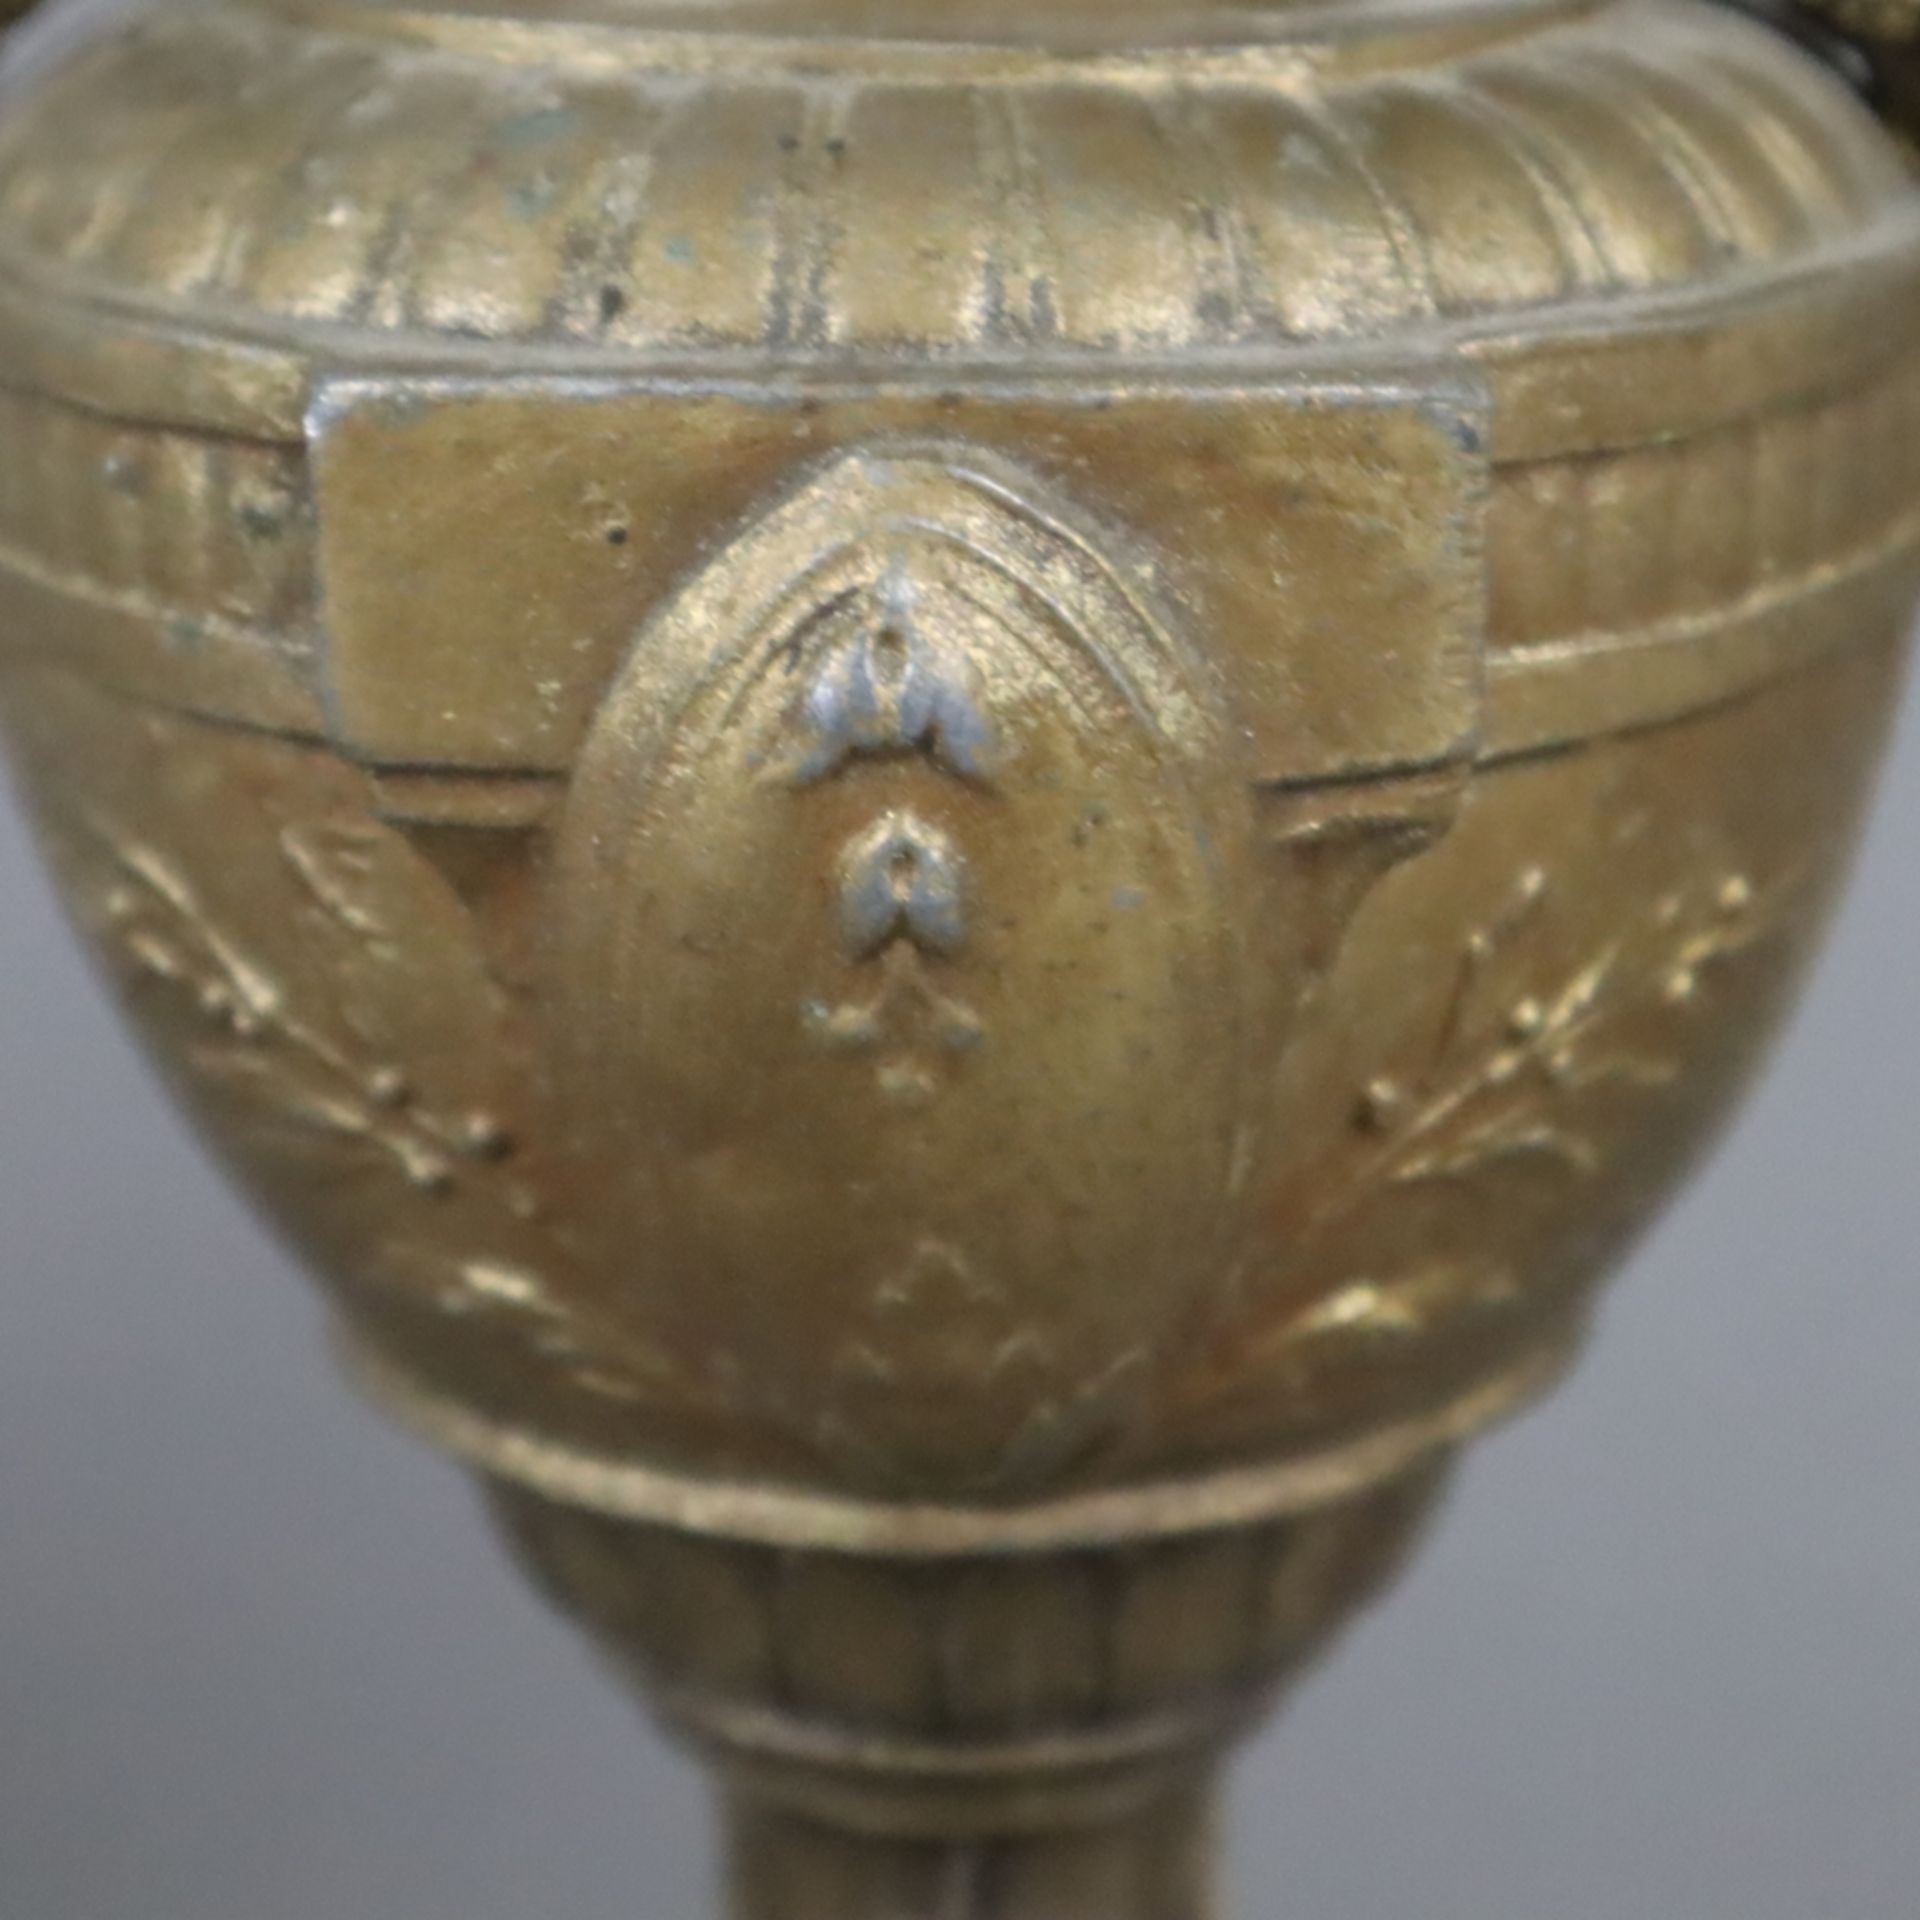 Paar Kaminvasen - Metallkorpus, goldfarben gefasst, balusterförmige Vasen, Reliefdekor im klassizis - Bild 6 aus 7